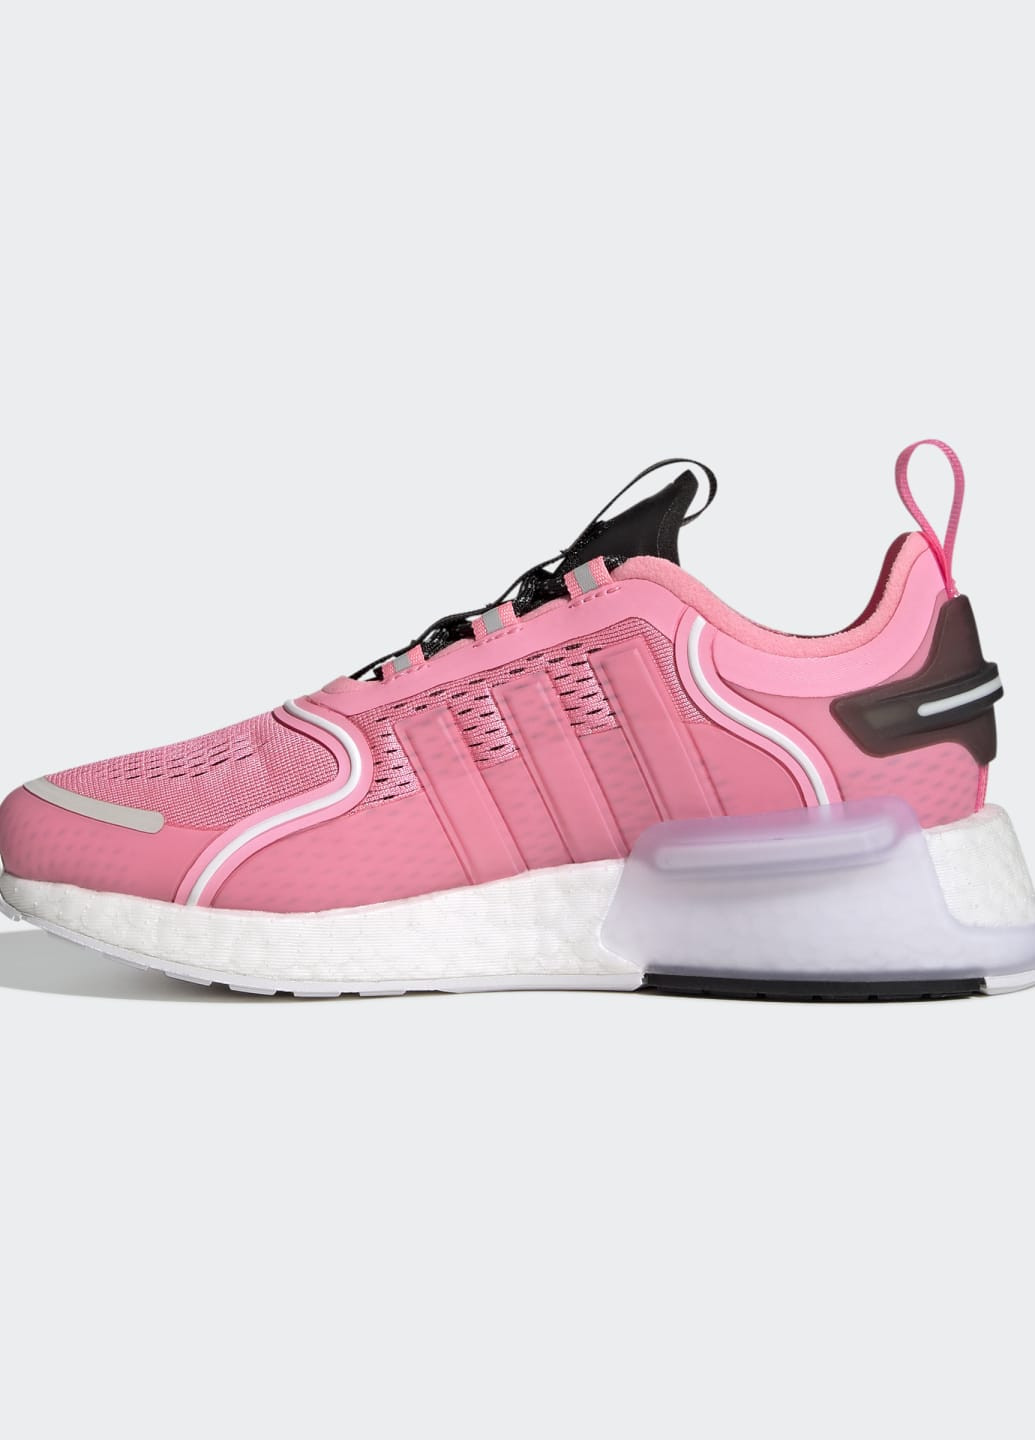 Розовые всесезонные кроссовки nmd_r1 v3 adidas